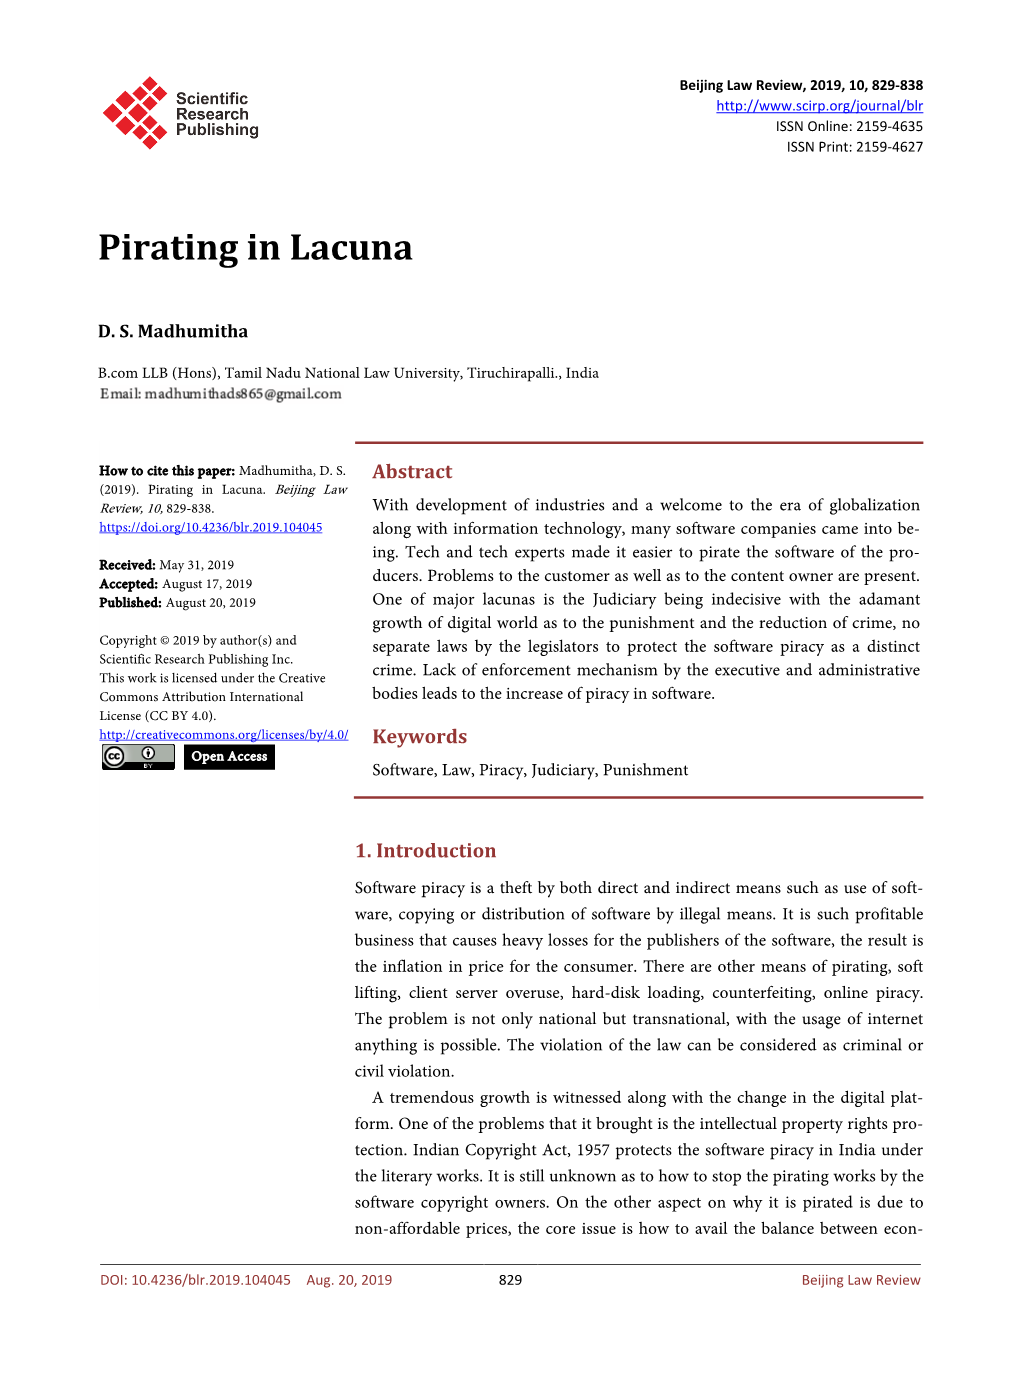 Pirating in Lacuna